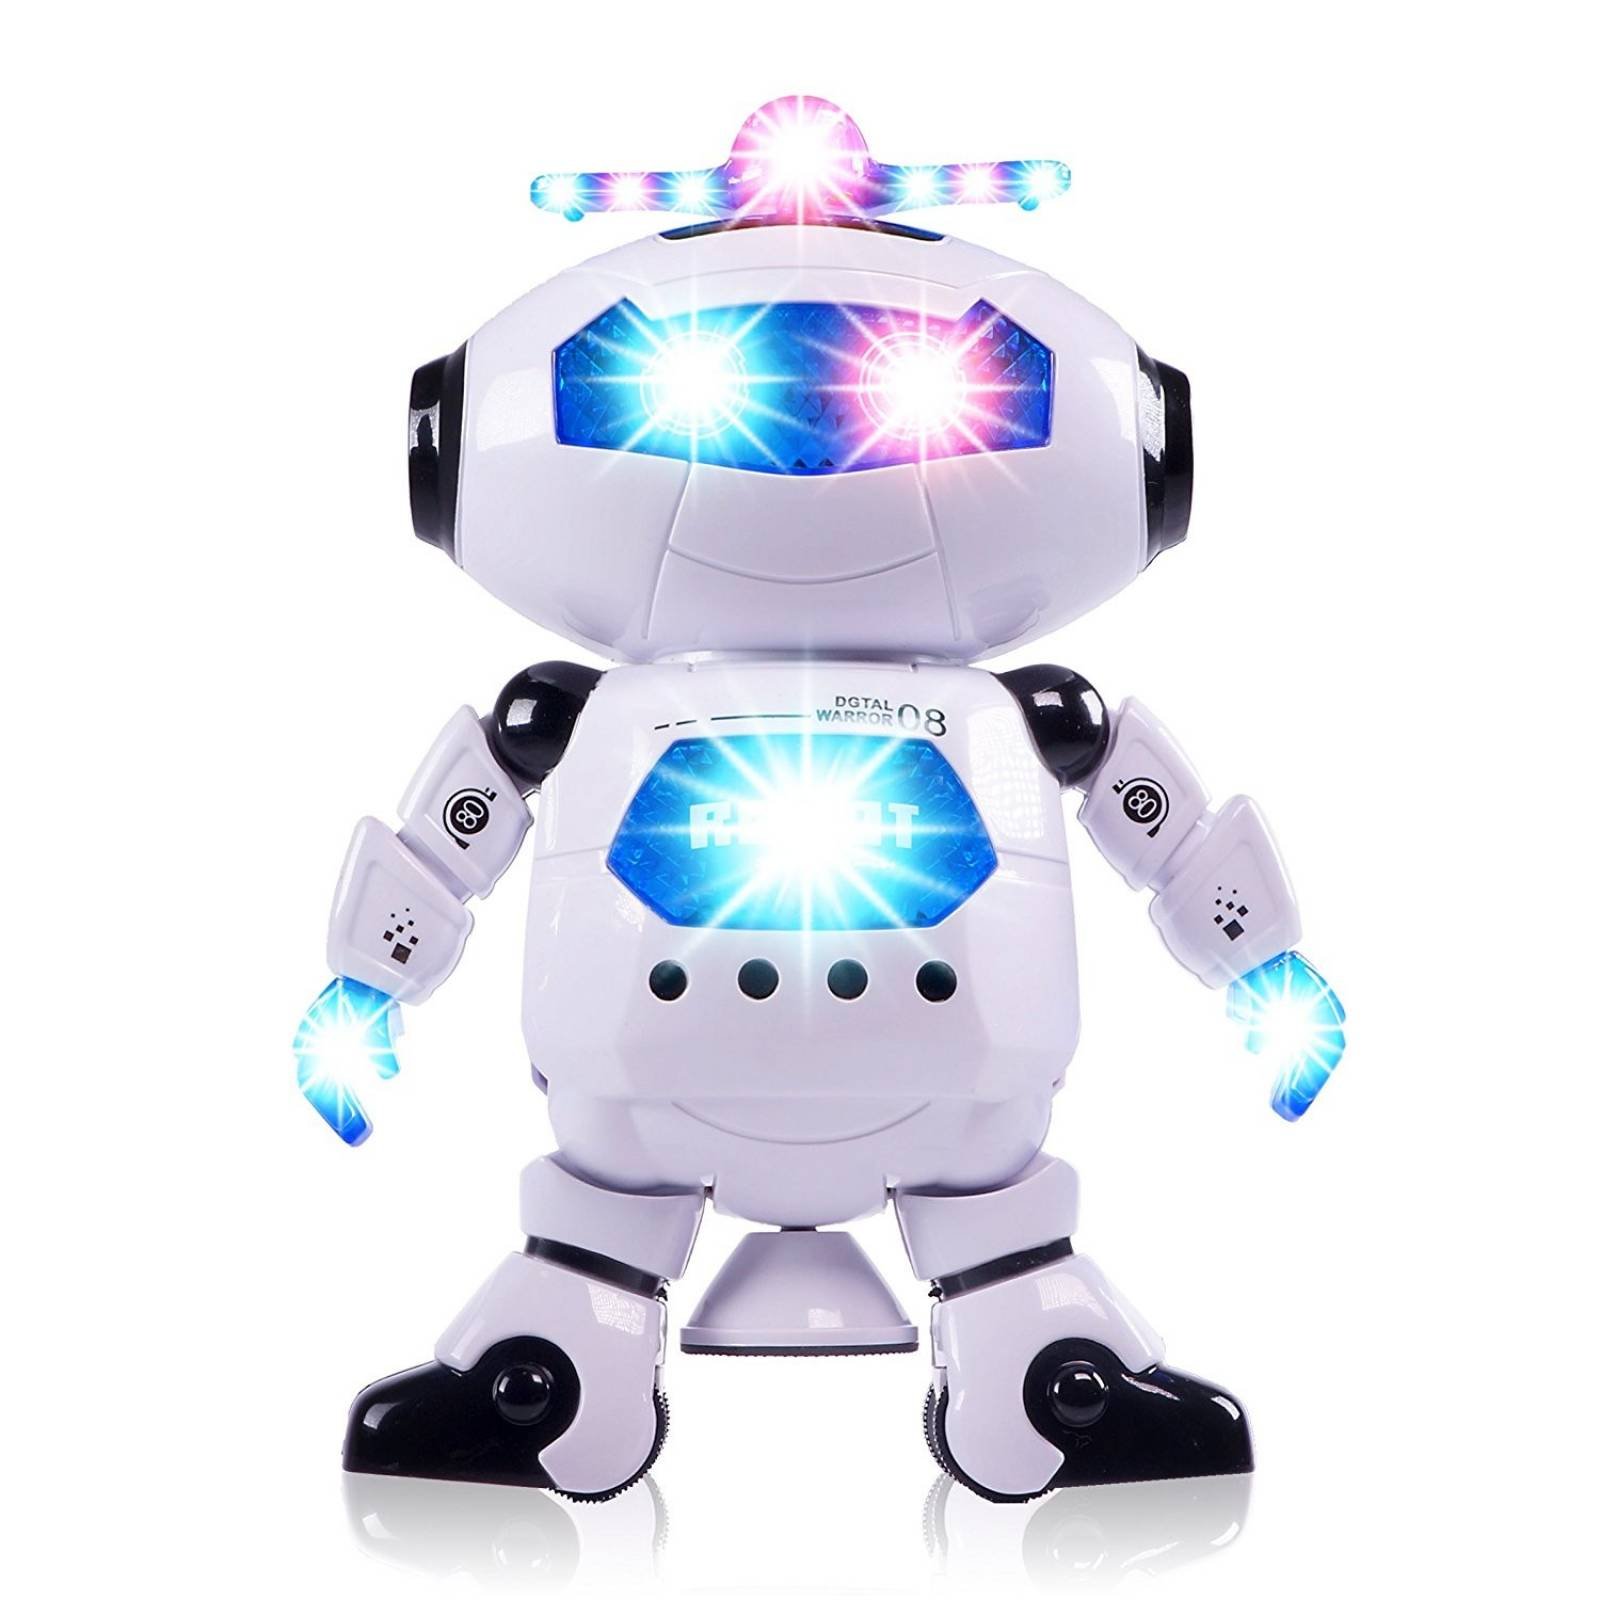 Juguete Ciftoys Robot De Juguete Para Niños Luz Baila Camina